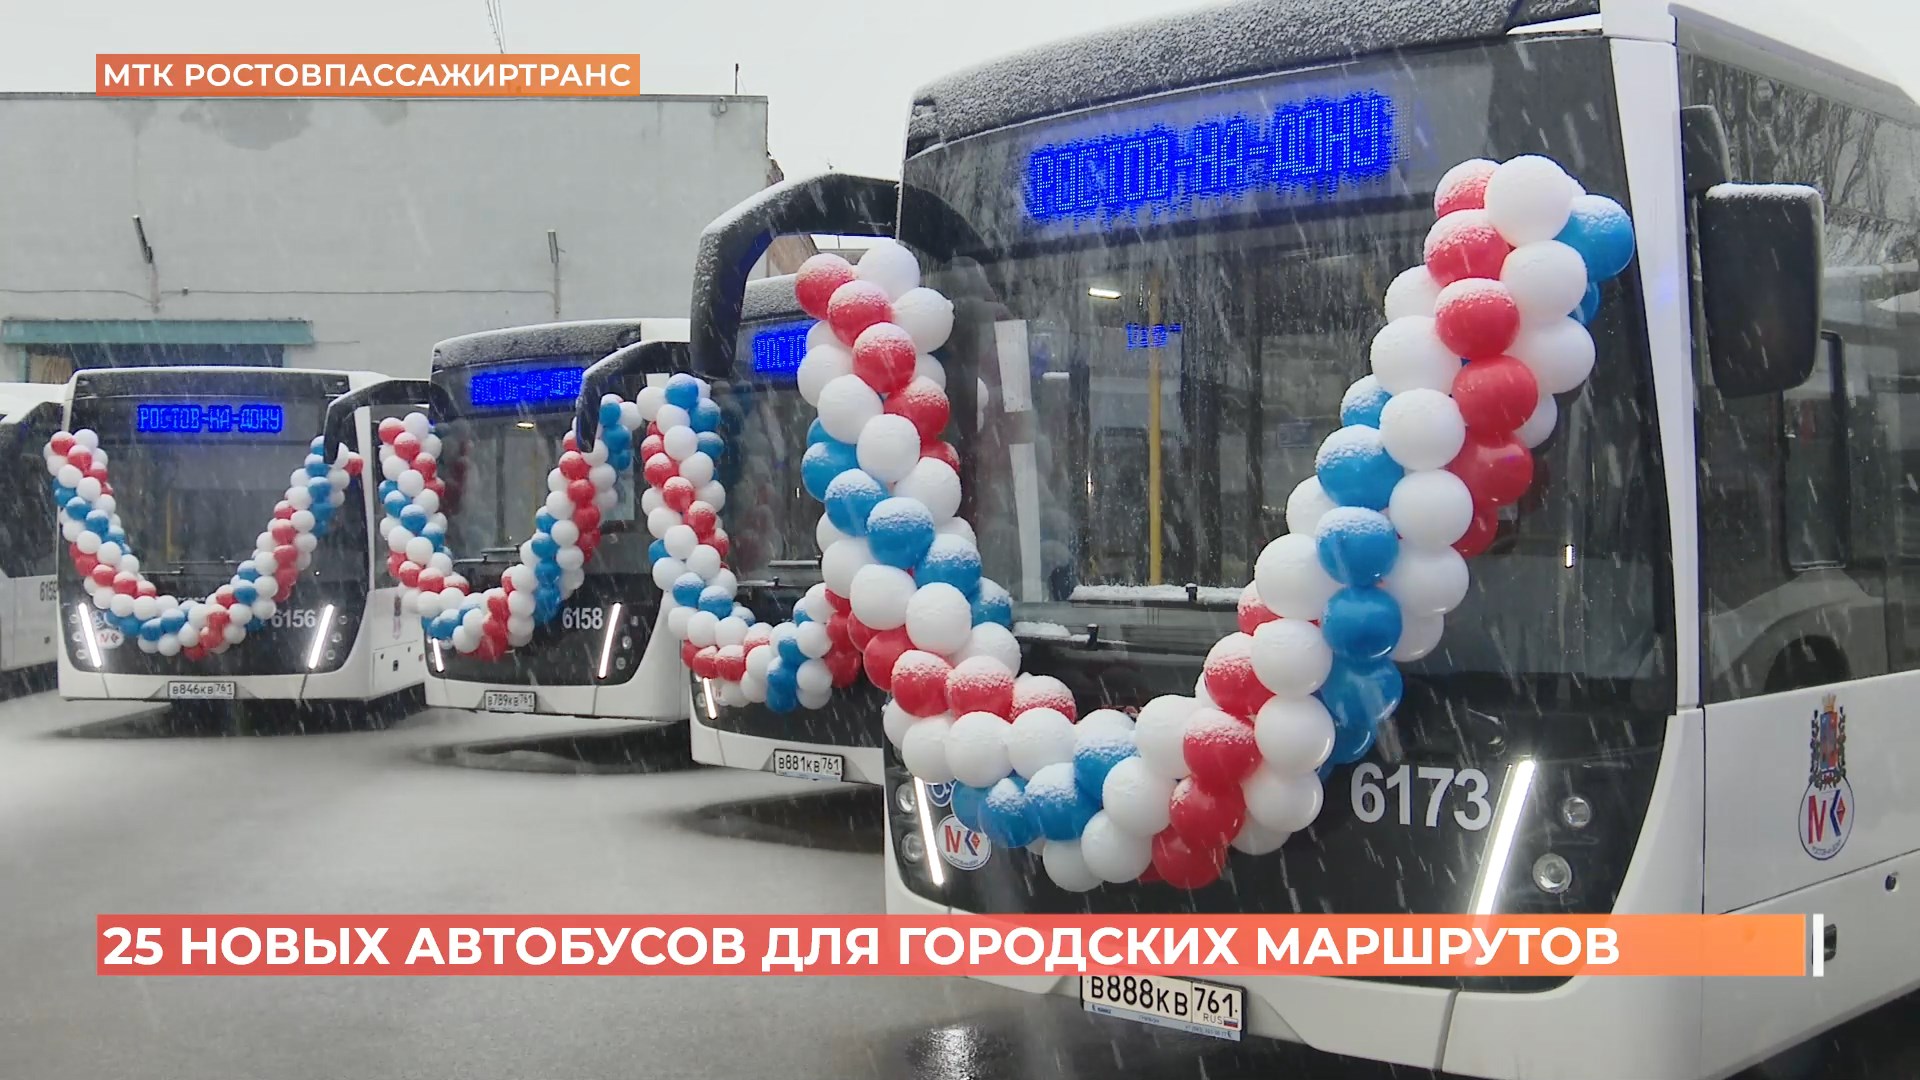 25 новых автобусов вышли на городские маршруты в Ростове